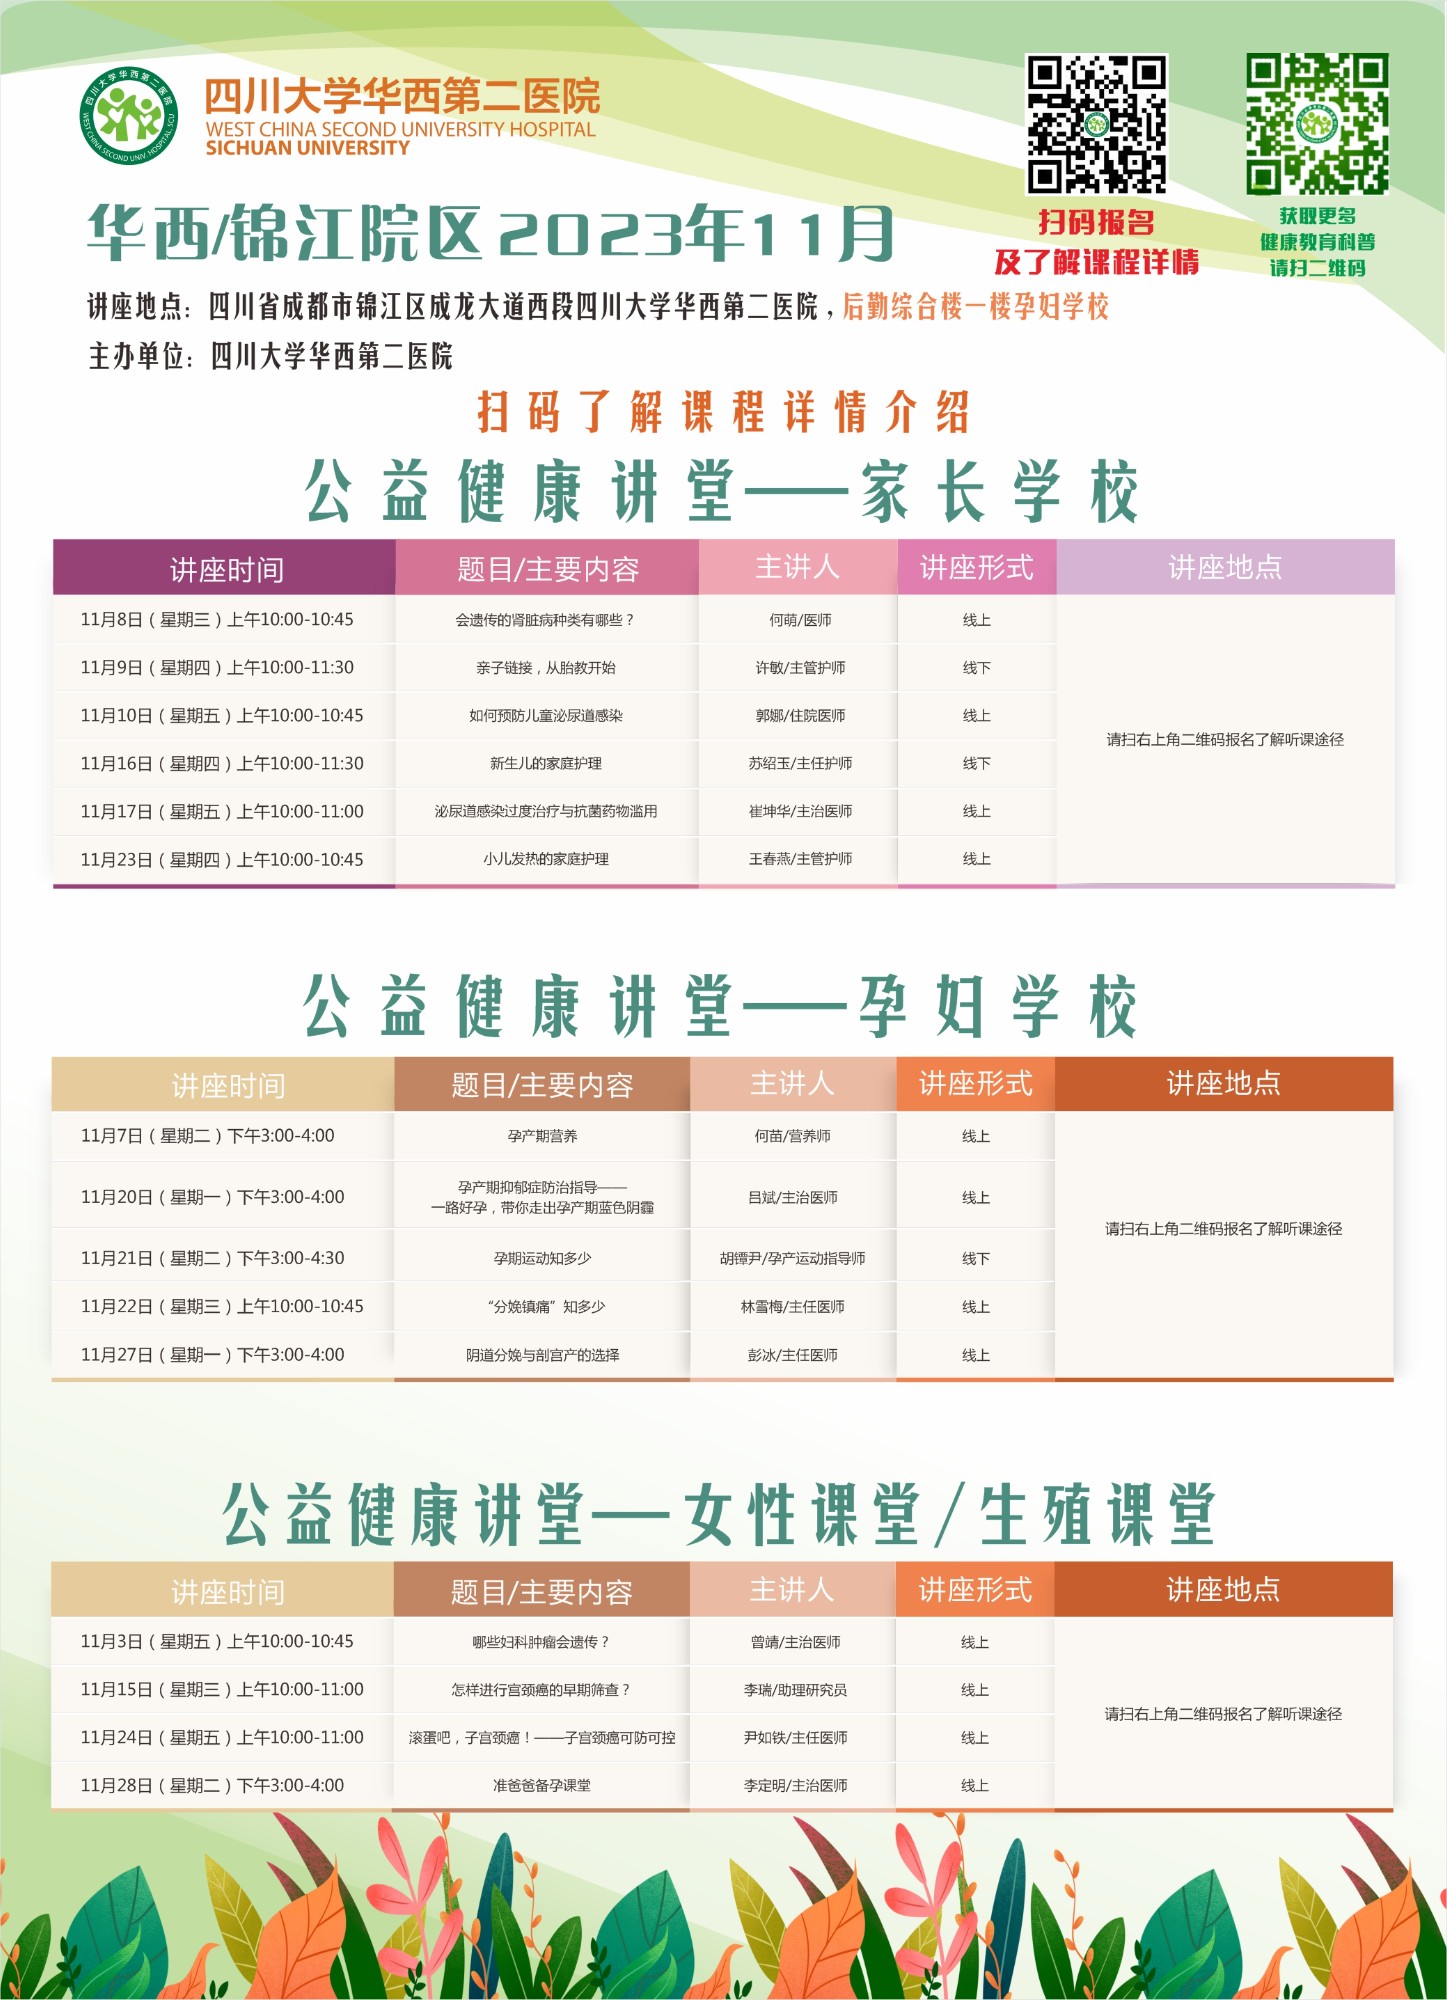 四川大学华西第二医院2023年11月公益家长学校/孕妇学校课程表